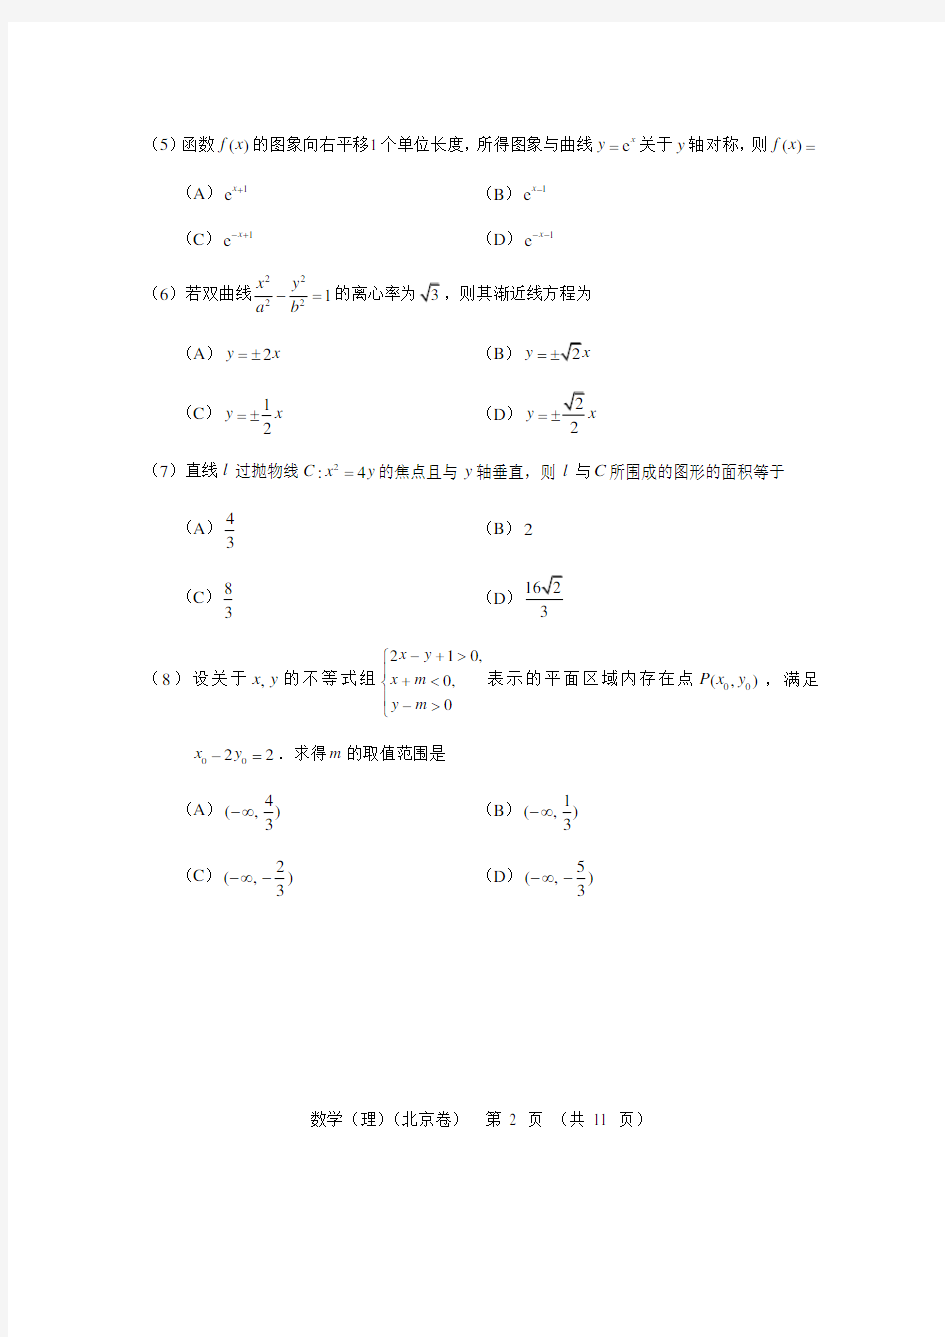 2013年北京高考数学真题及答案(理科)